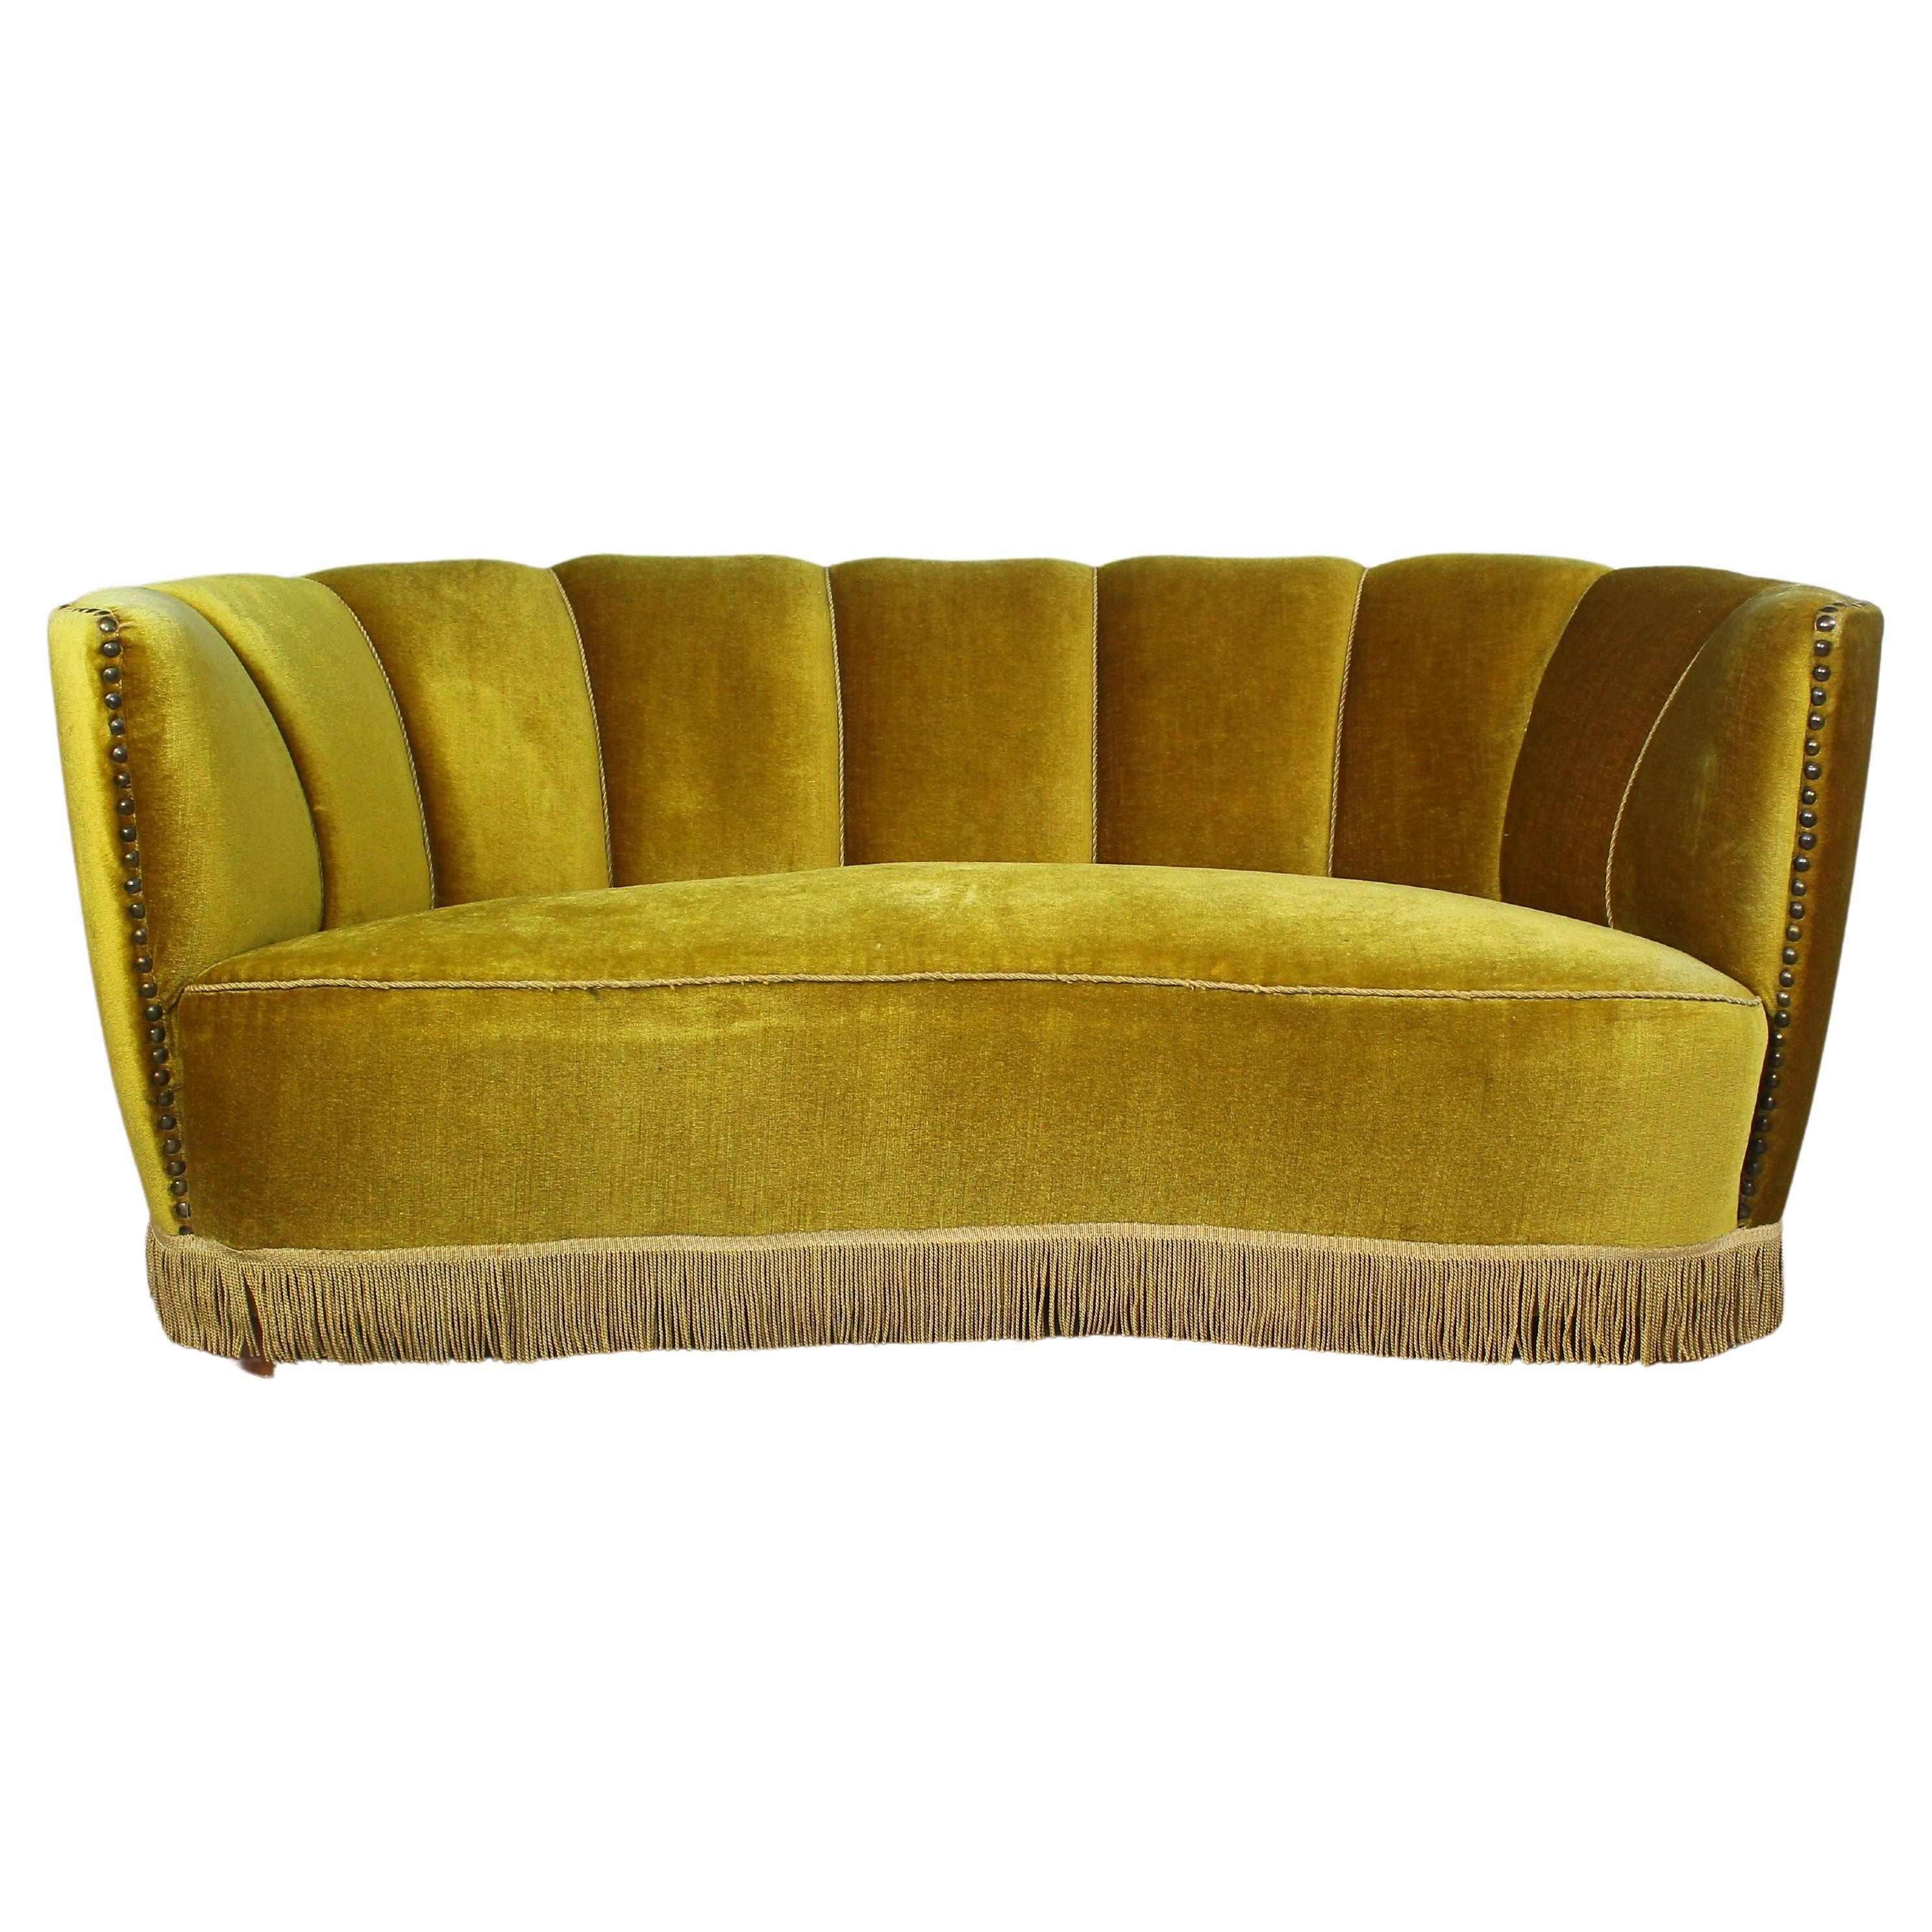 Banana shaped curved sofa from Mid-Century Modern era.
Made in Denmark, 1940s.
Upholstered in golden velvet.